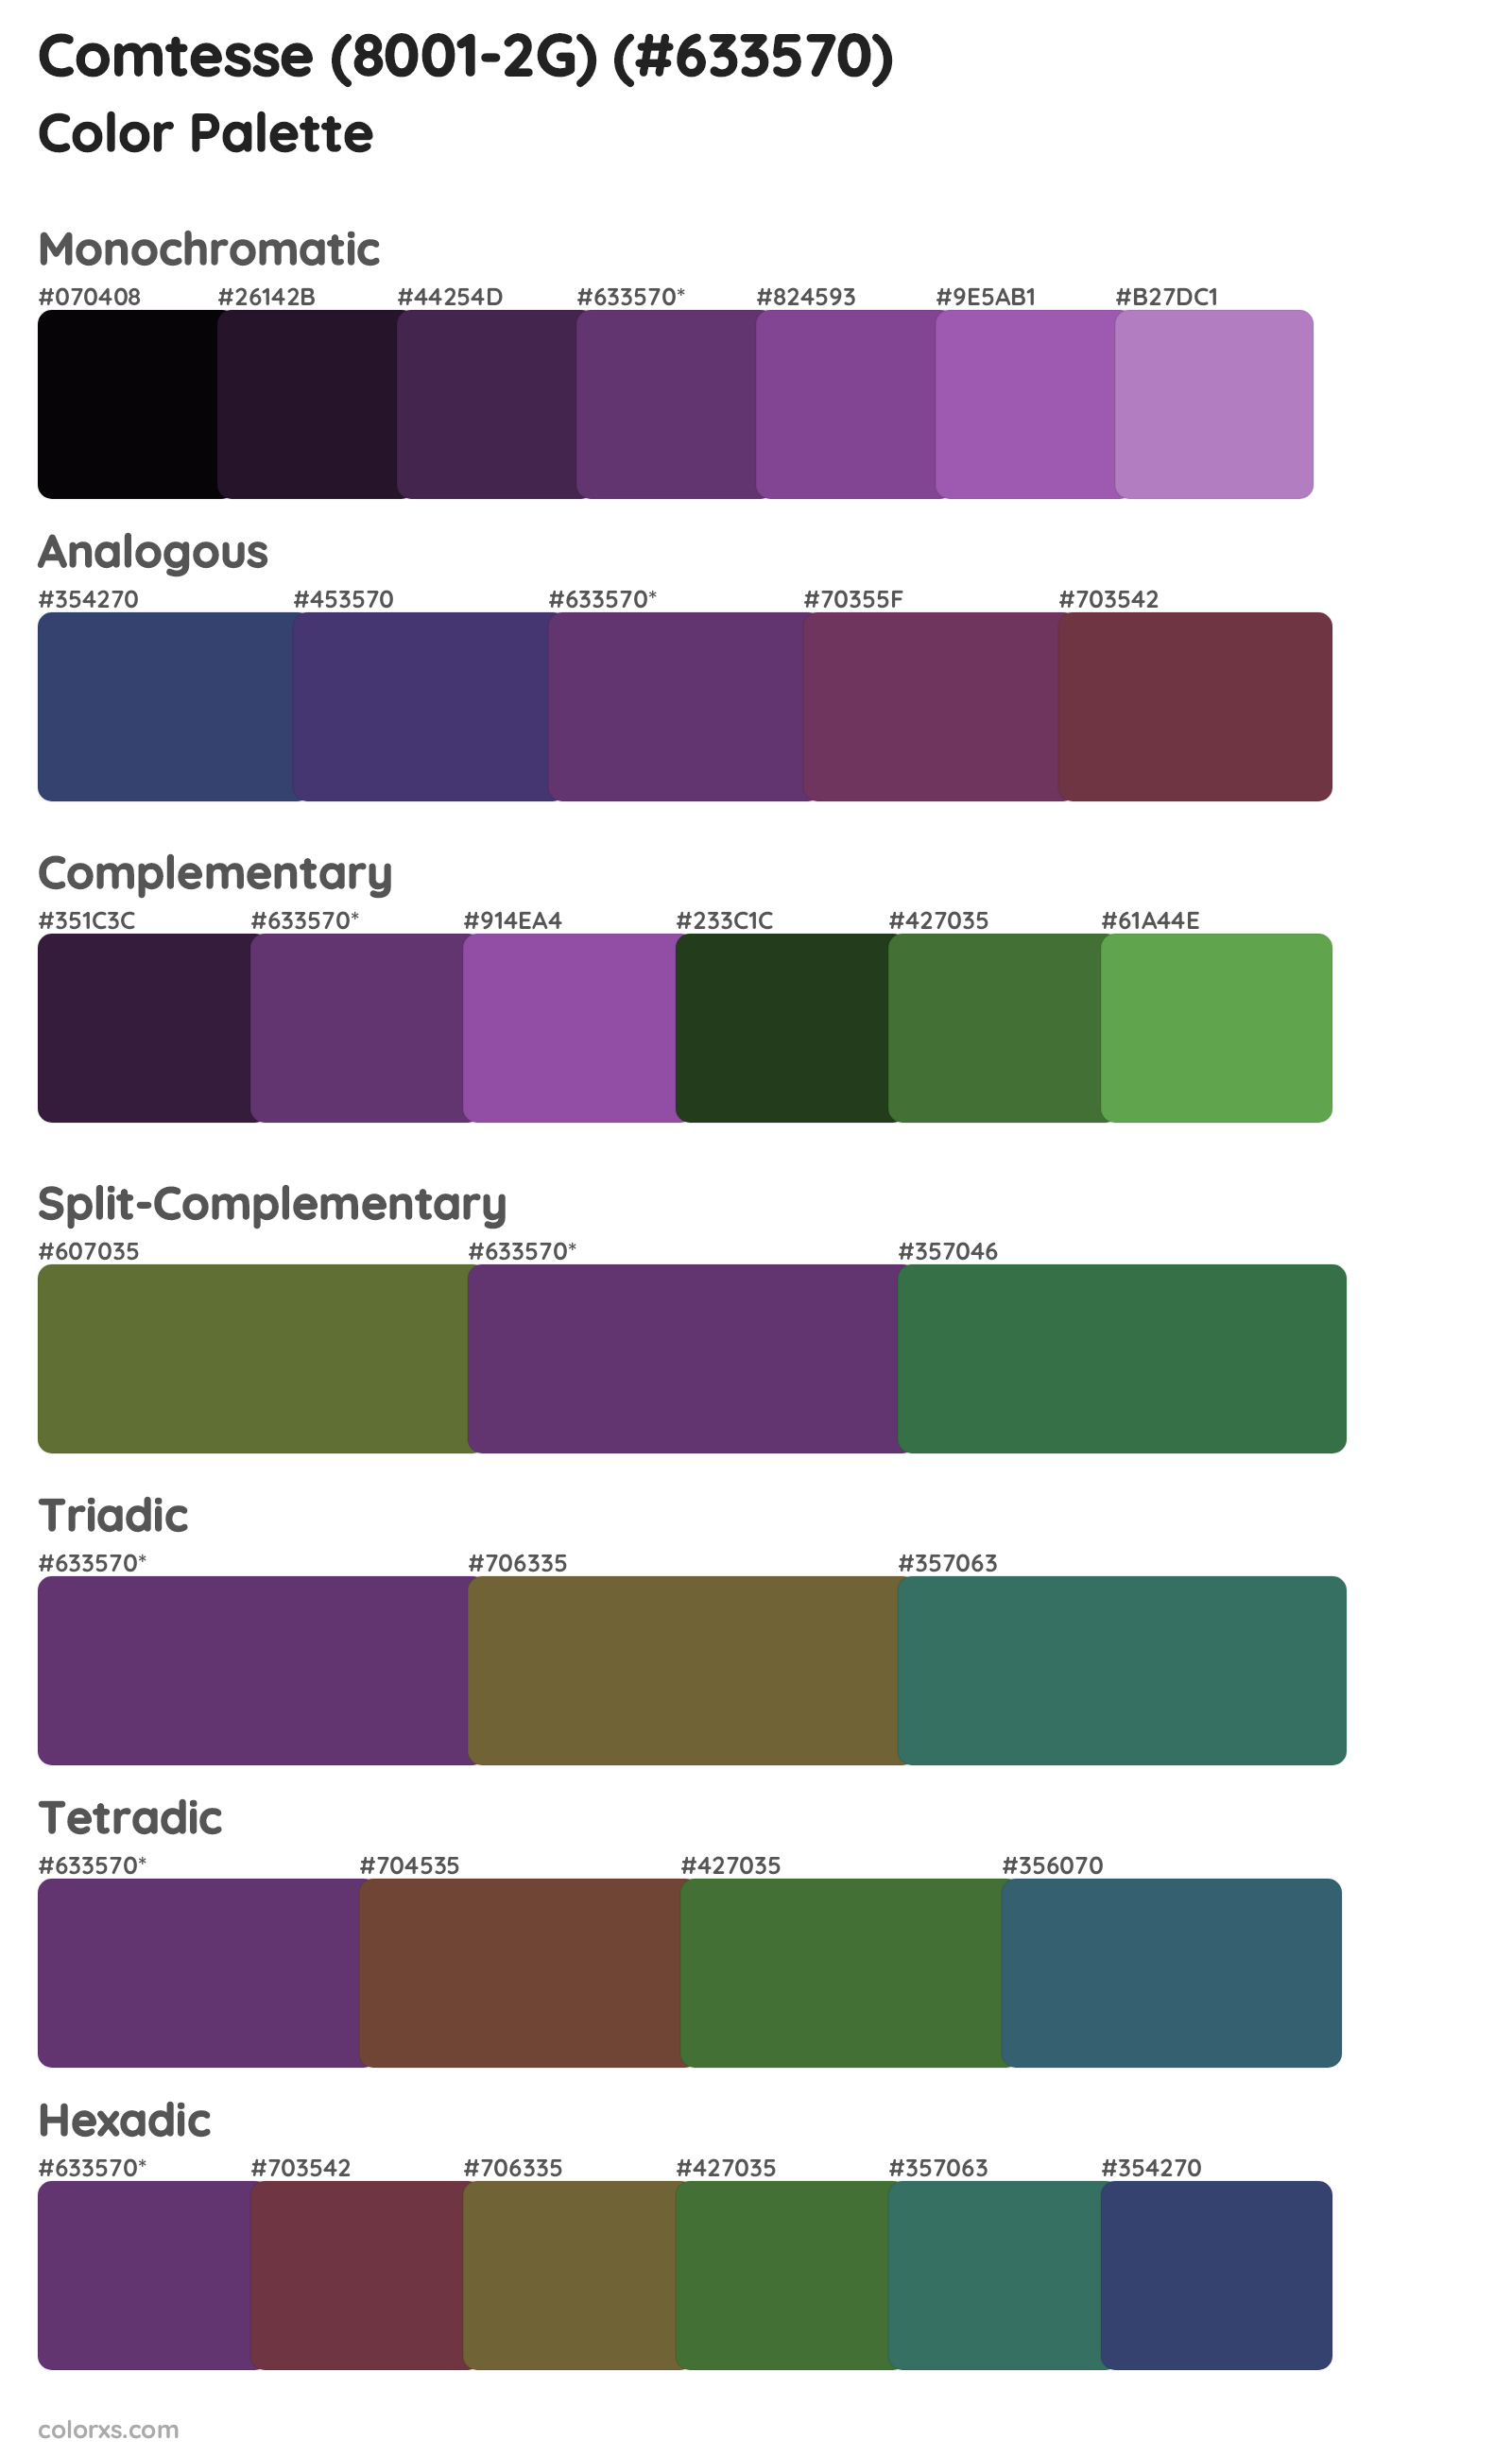 Comtesse (8001-2G) Color Scheme Palettes